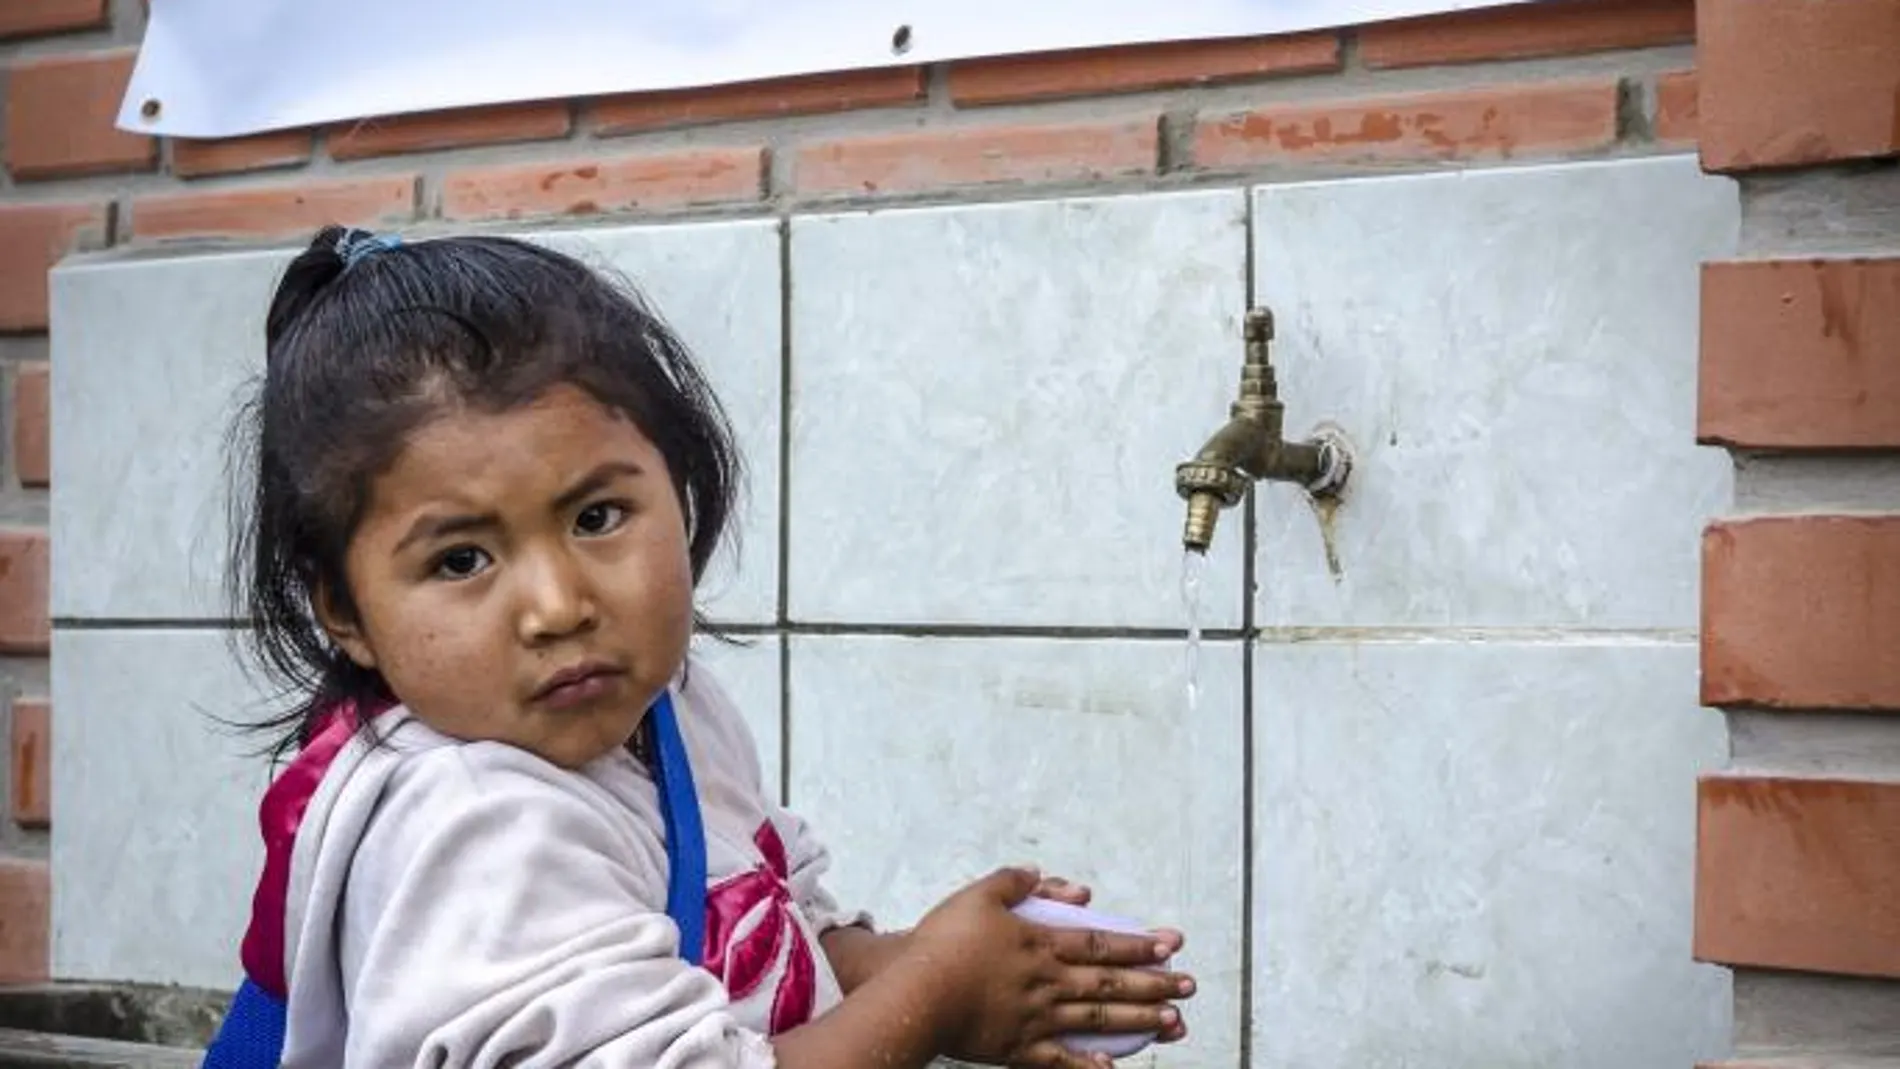 El acceso al agua significa que los niños y niñas puedan dedicar en su propia formación el tiempo que ahora dedican a recolectarla